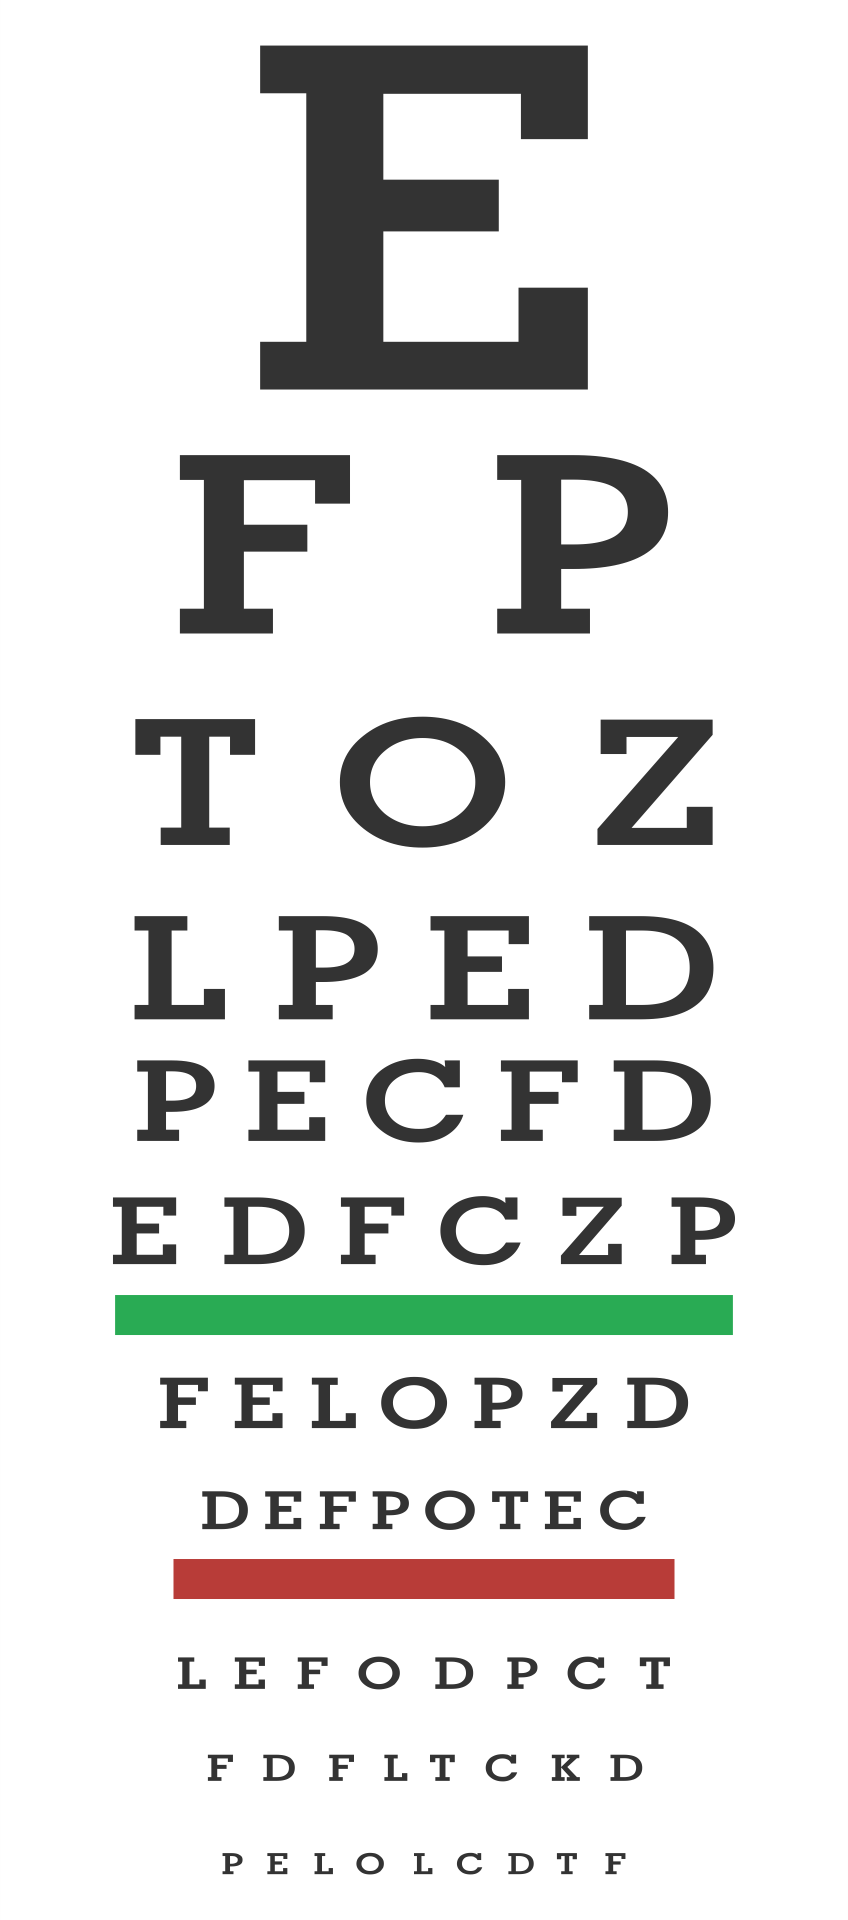 Printable Home Eye Chart